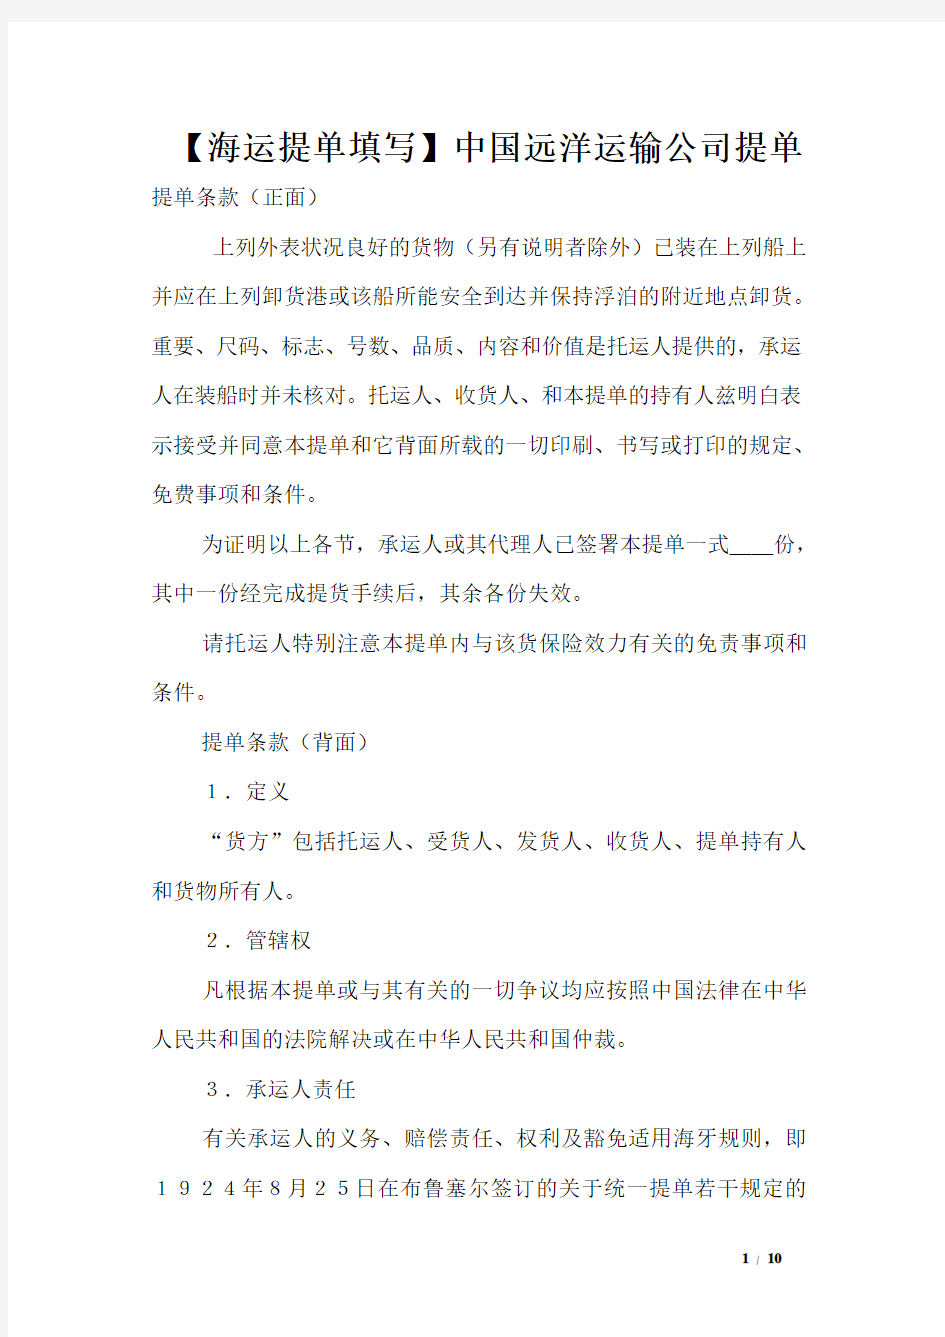 【海运提单填写】中国远洋运输公司提单